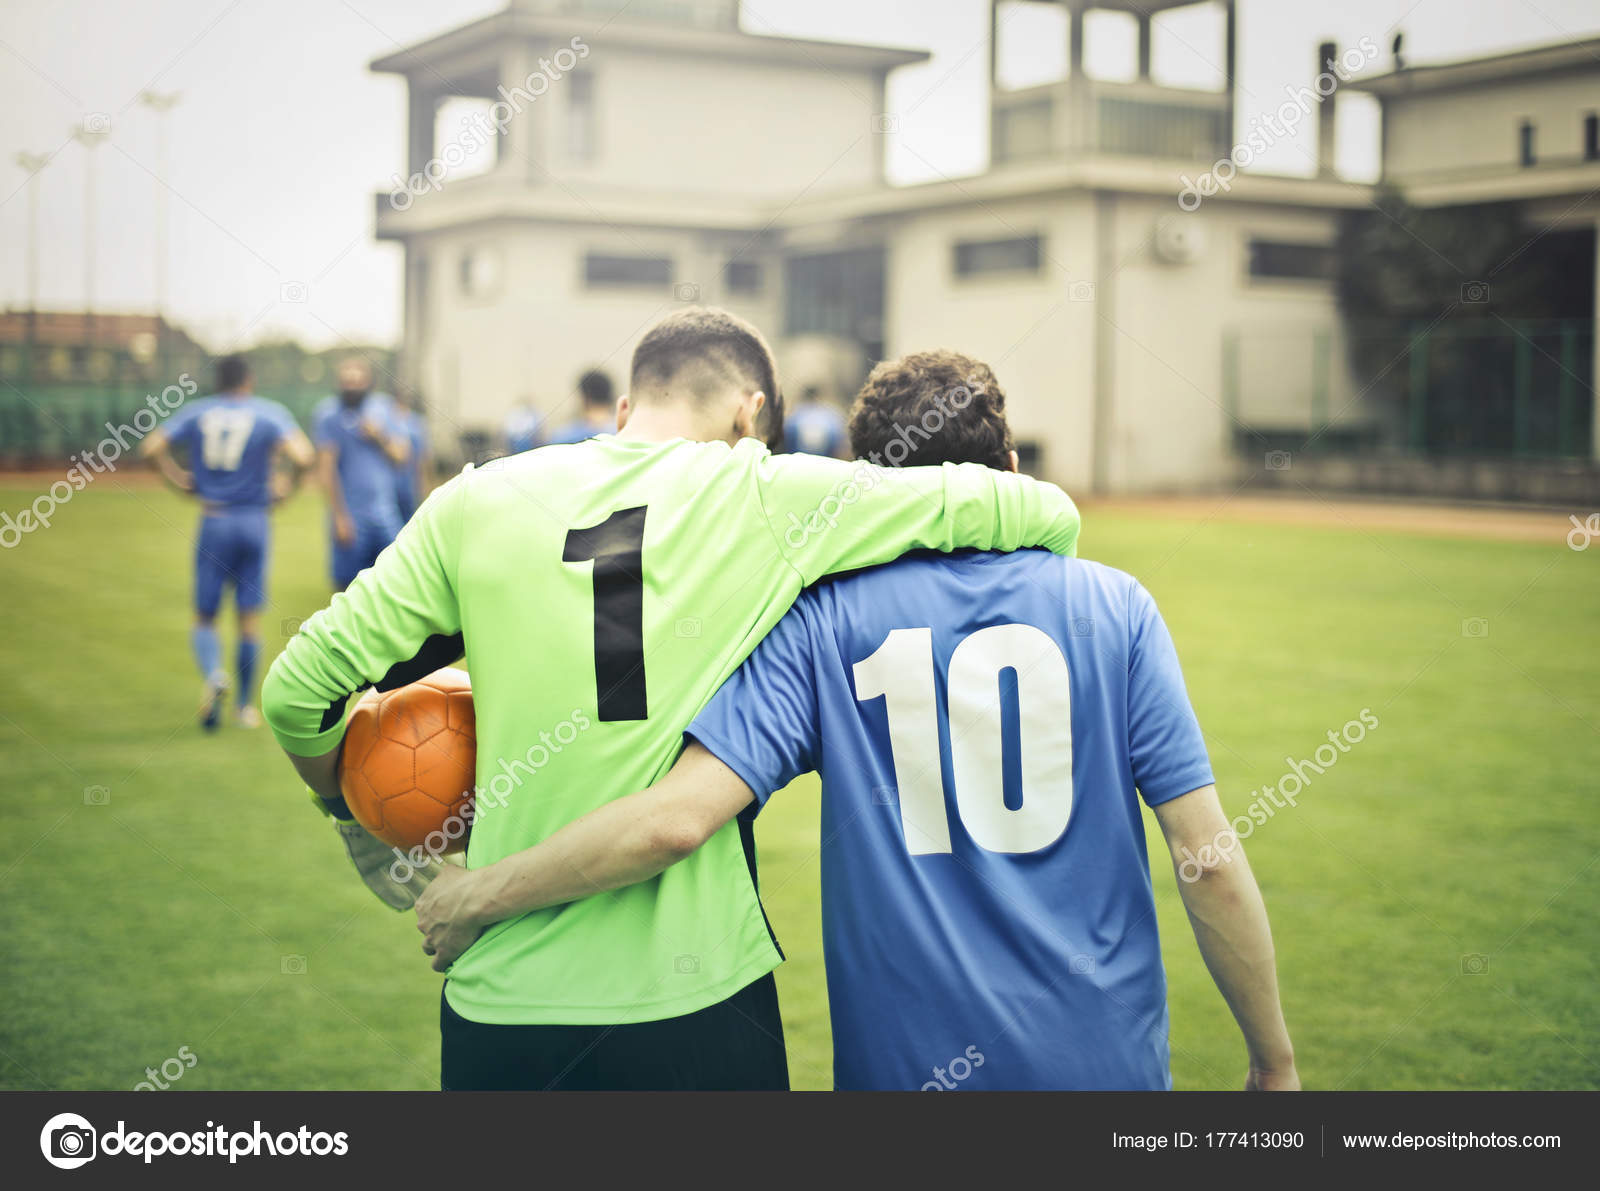 Dois Jogadores Futebol Abraçando Forma Amigável fotos, imagens de © olly18  #177413090